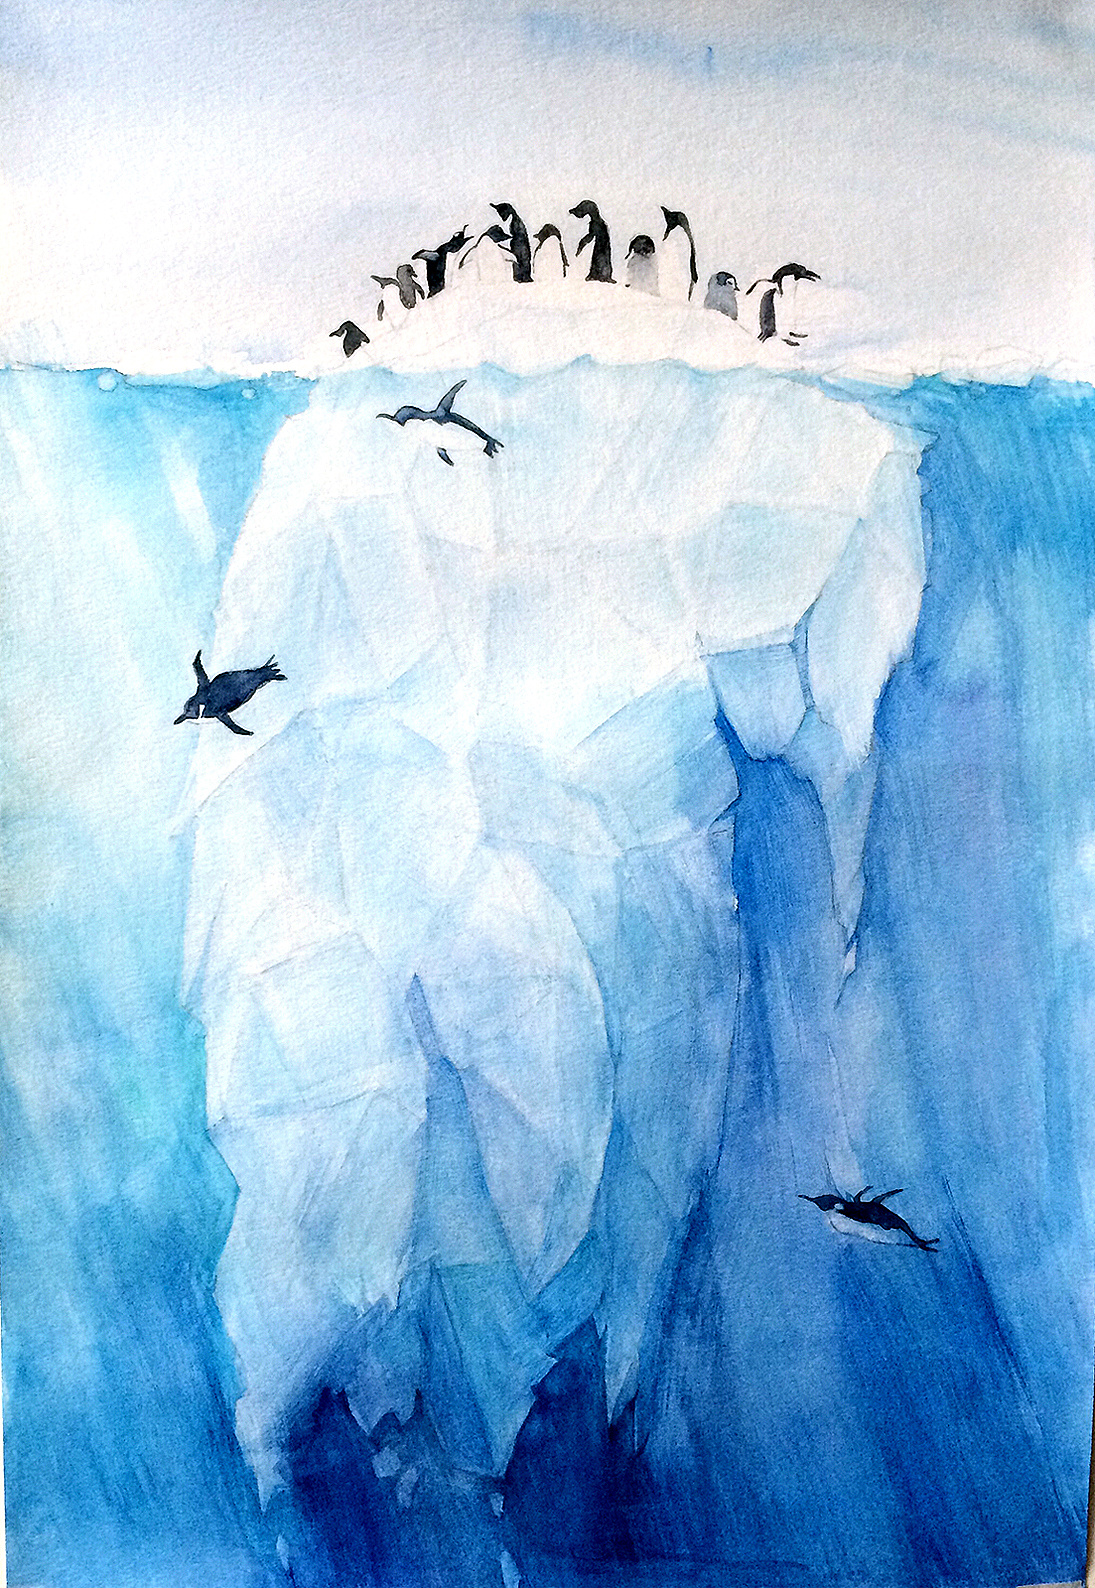 全球变暖 可怜的企鹅们站在正在融化的冰川